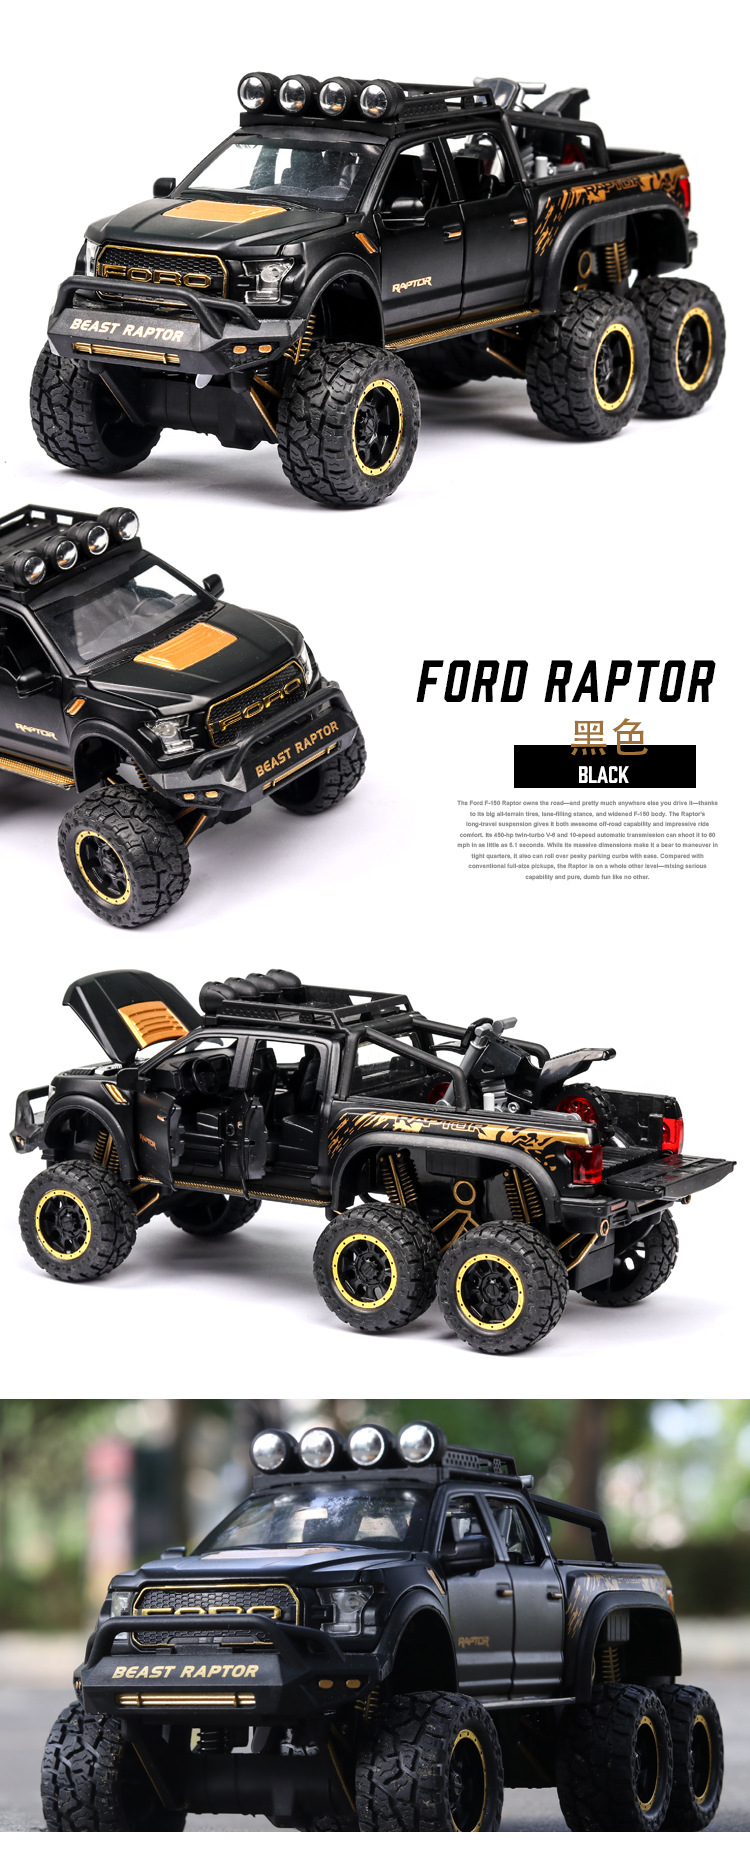 Xe mô hình Ford Raptor off-road bán tải F150 tỉ lệ 1:24 - ảnh 16